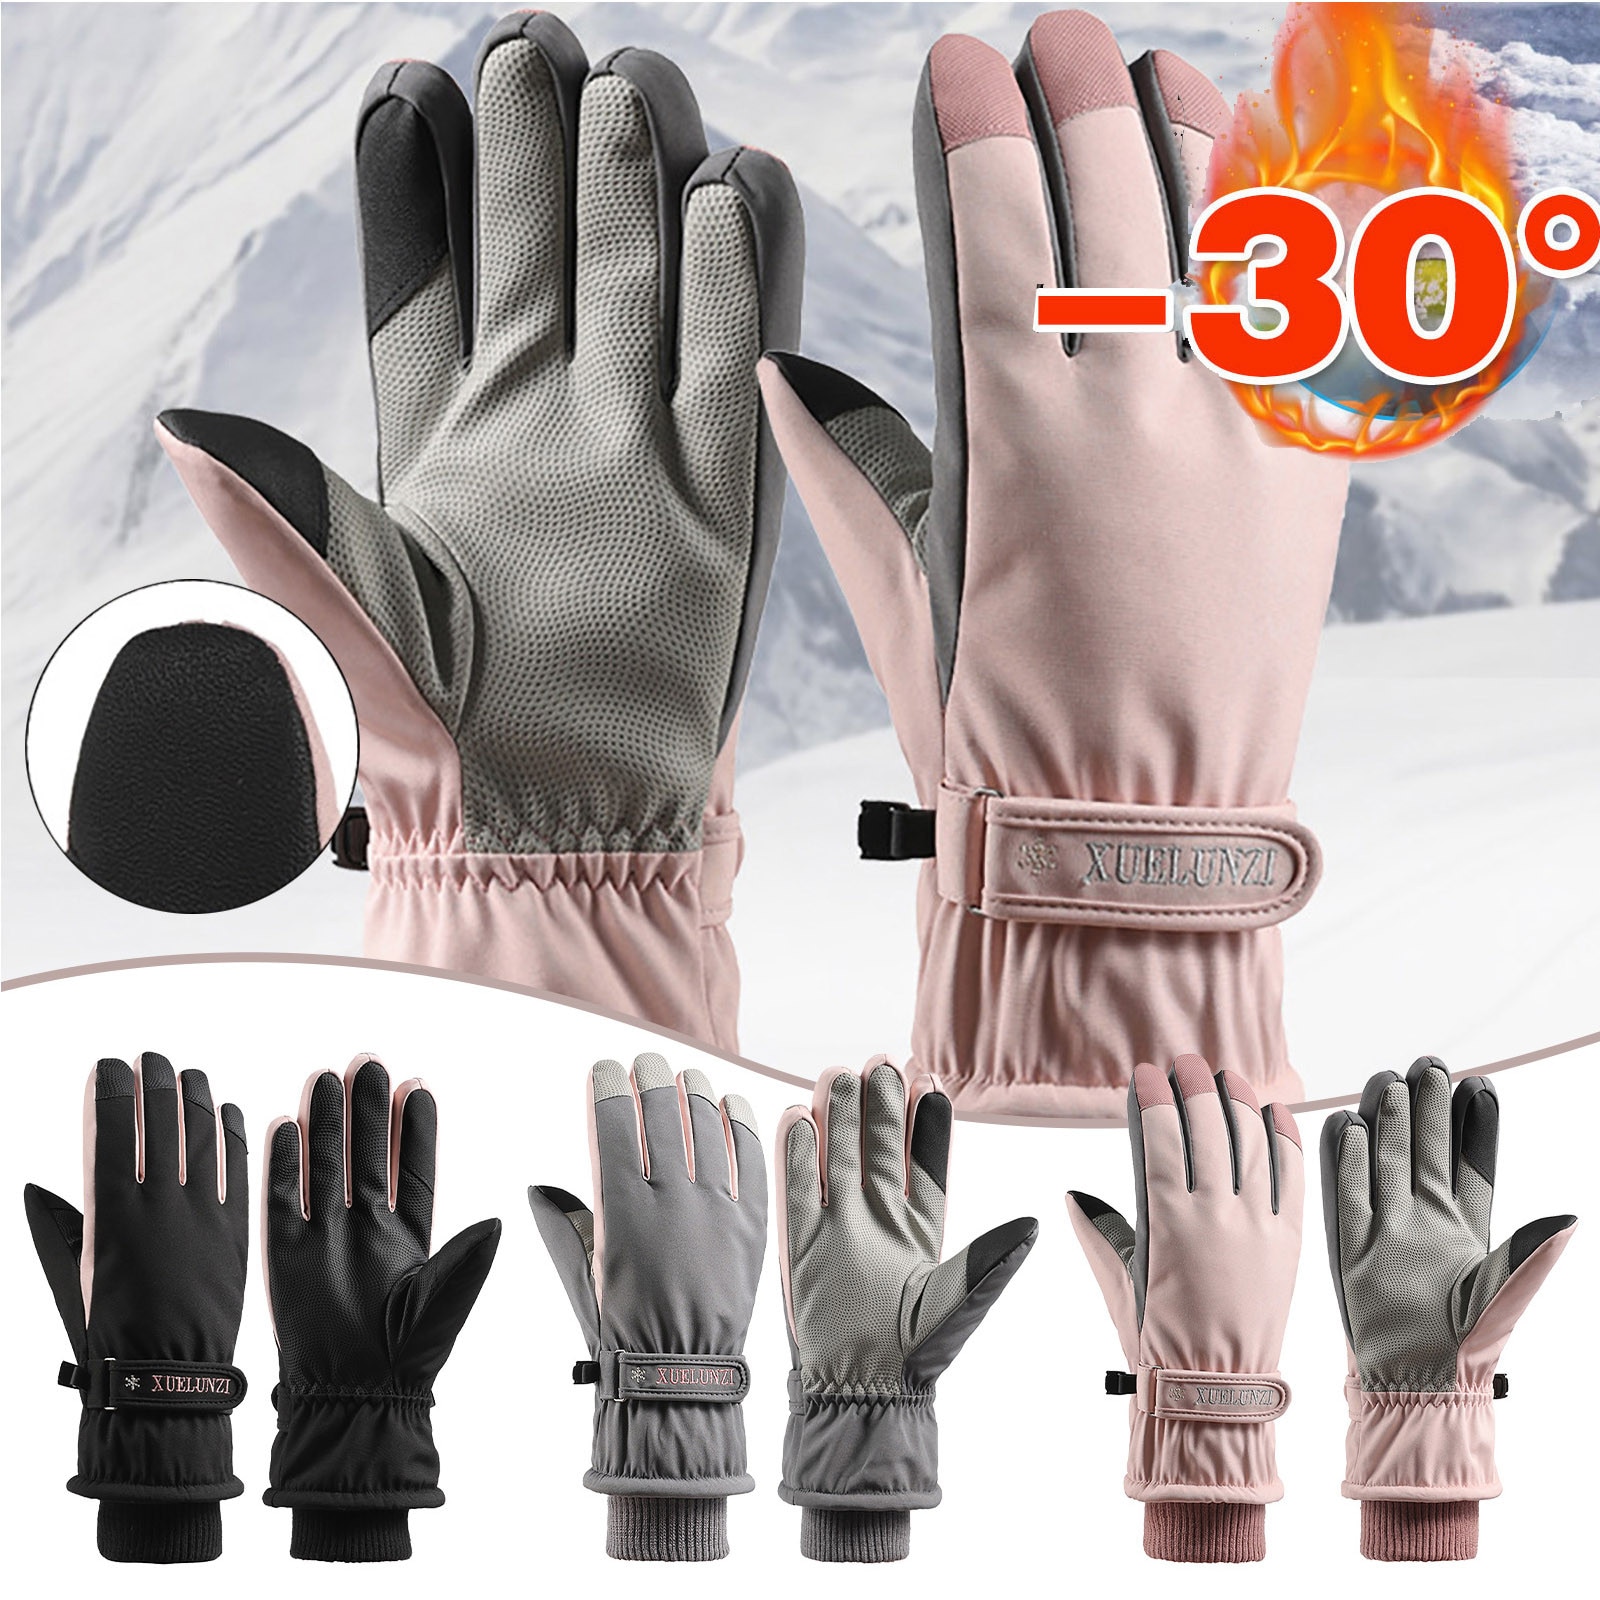 Vrouwen Winter Warme Handschoenen Winddicht Thermische Handschoenen Touch Screen Pu Lederen Handschoen Rijden Ski Telefingers Handschoenen Oc6